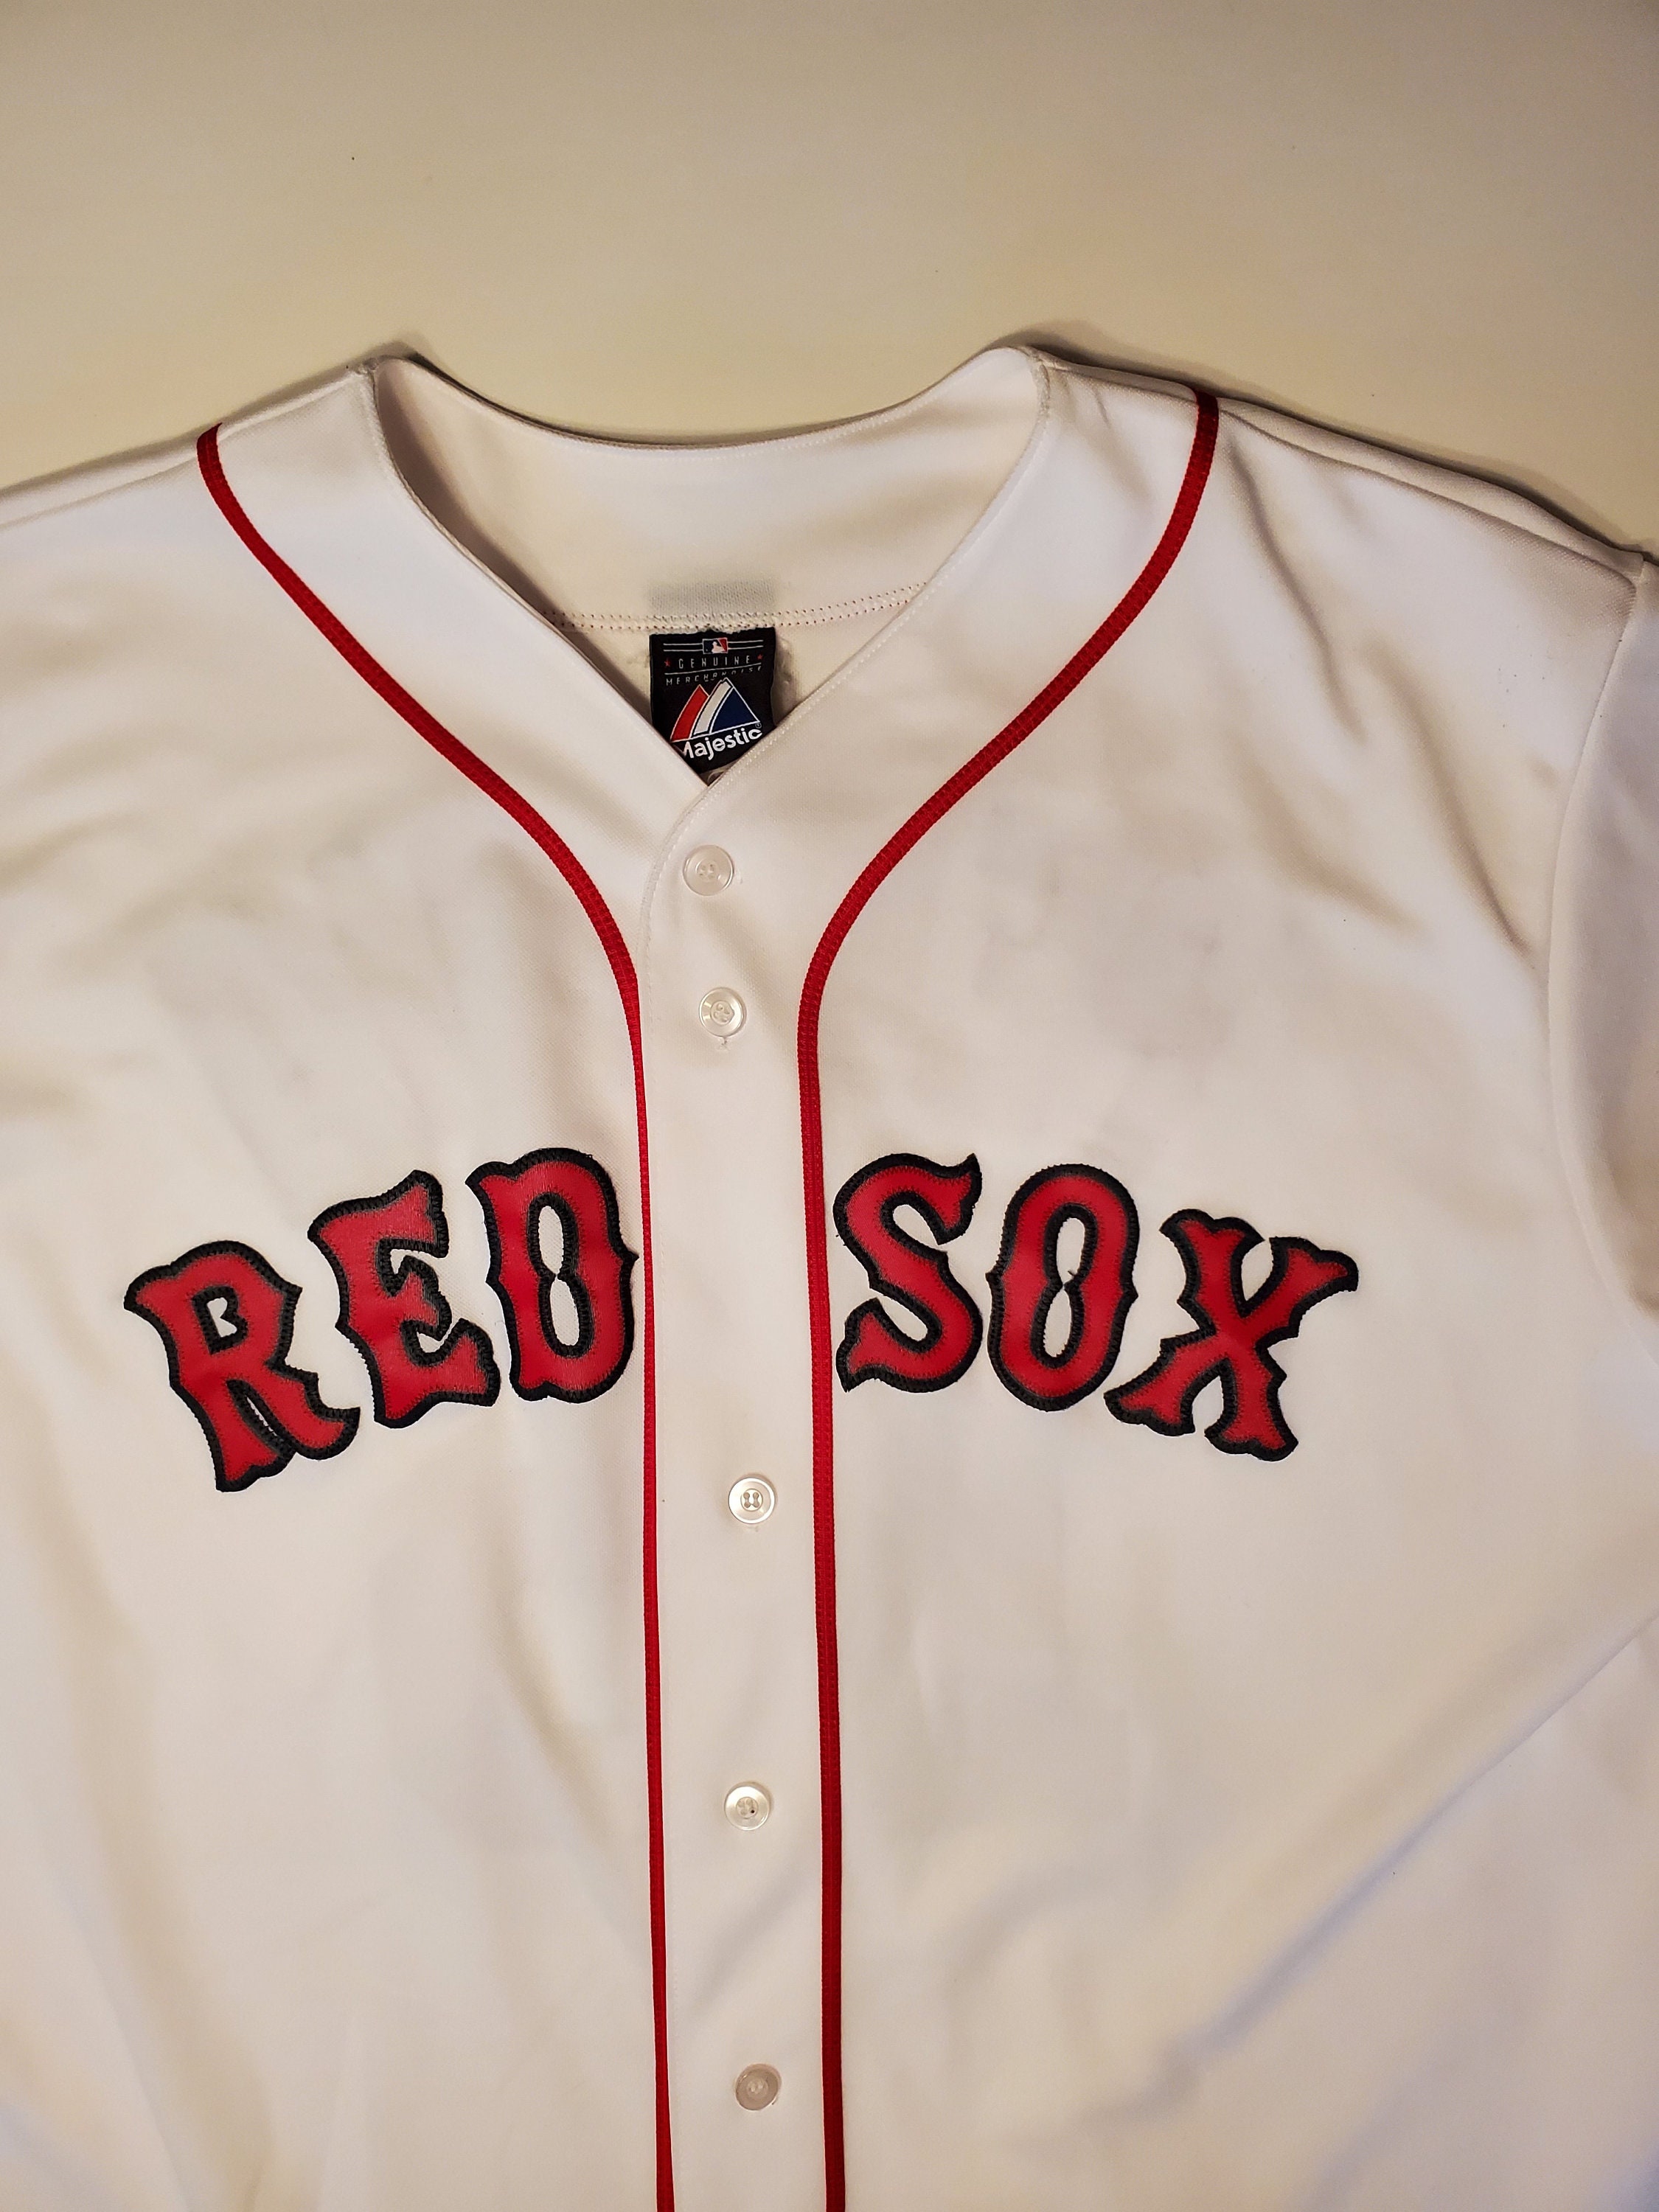 Majestic BOSTON RED SOX IRISH Button-Down 2XL Baseball Jersey ST  PATRICK'S DAY